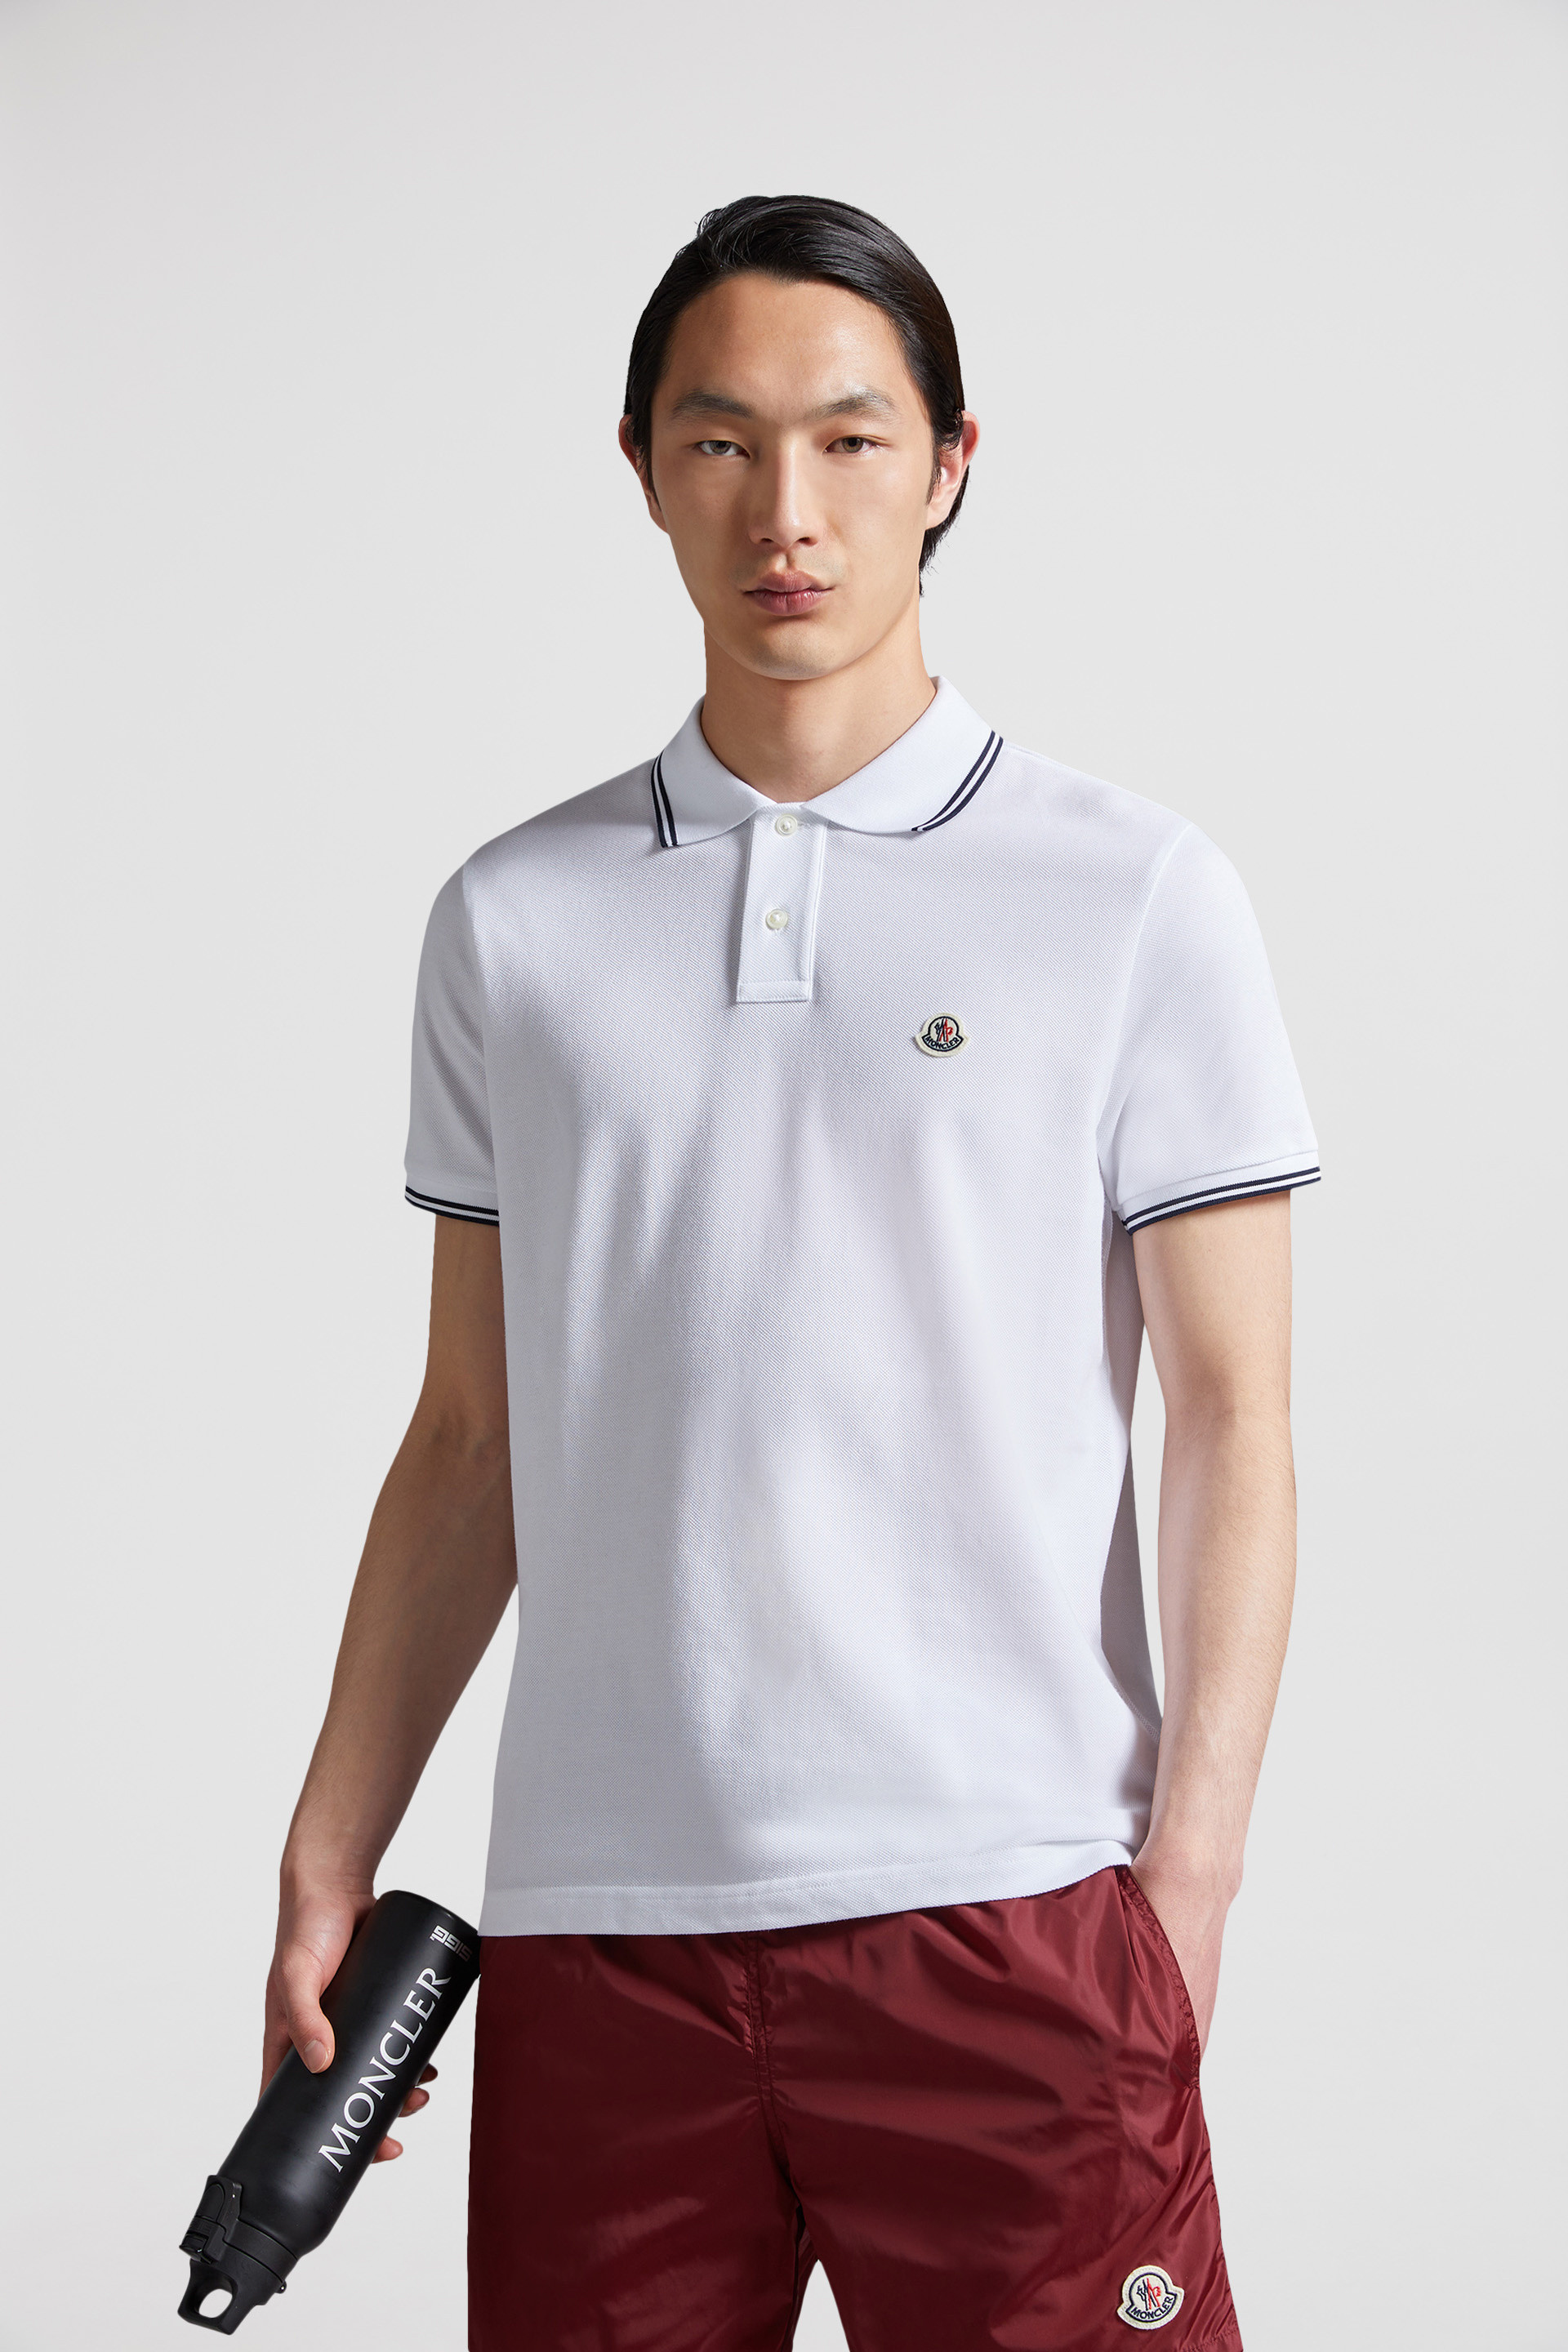 スポーツMONCLER ポロシャツホワイト (XLサイズ) ※日本未入荷  付属品:タグ